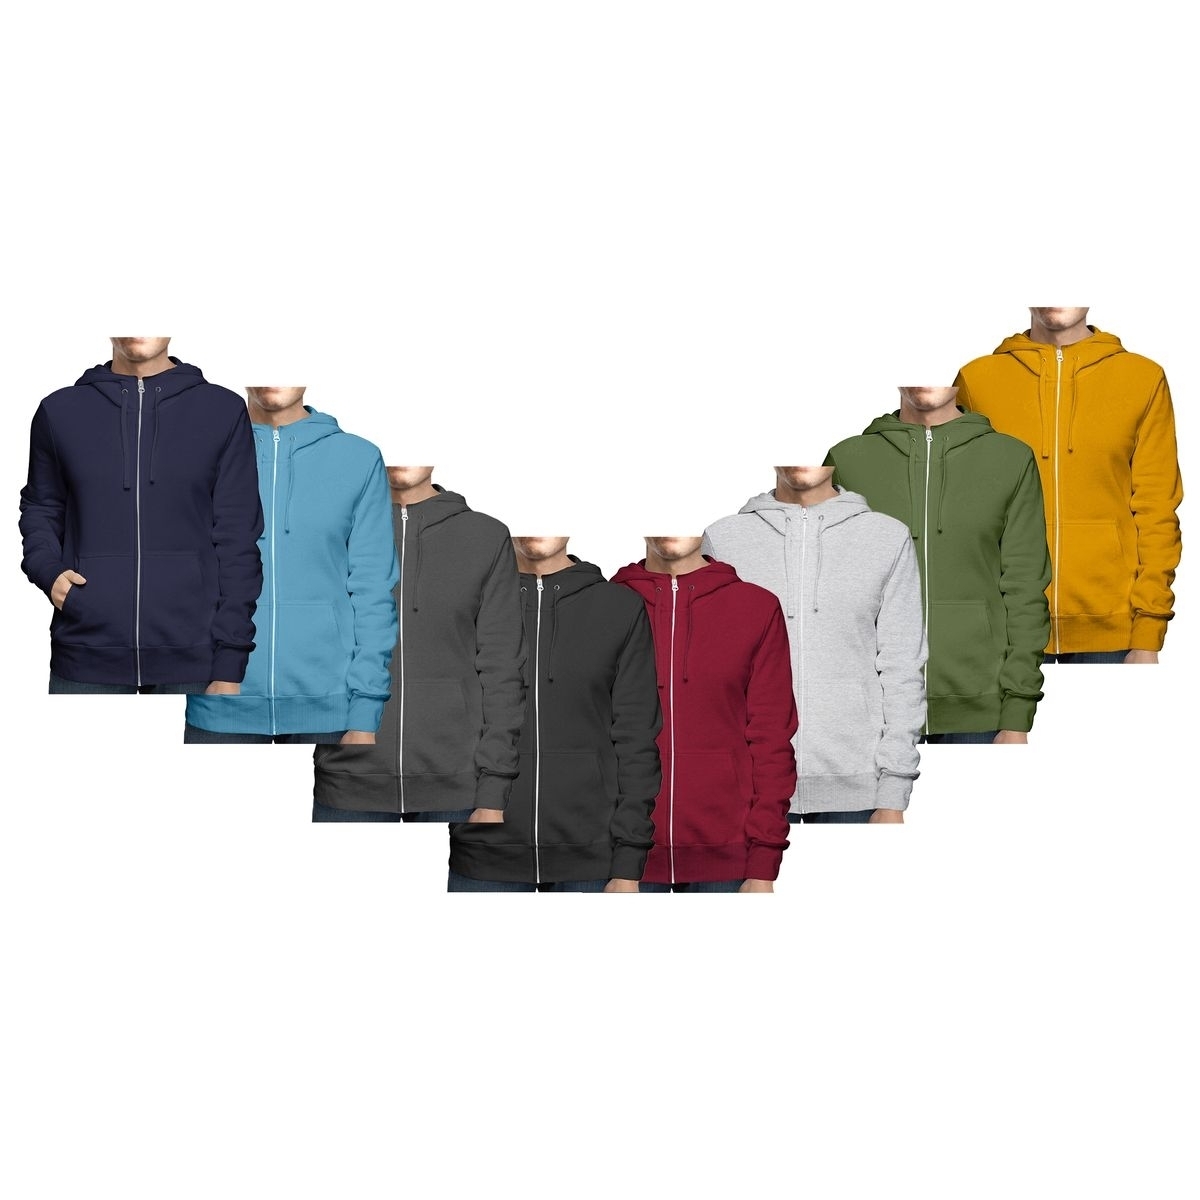 Men's Big & Tall Winter Warm Soft Cozy Full Zip-Up Fleece Lined Hoodie Sweatshirt - Grey, Large